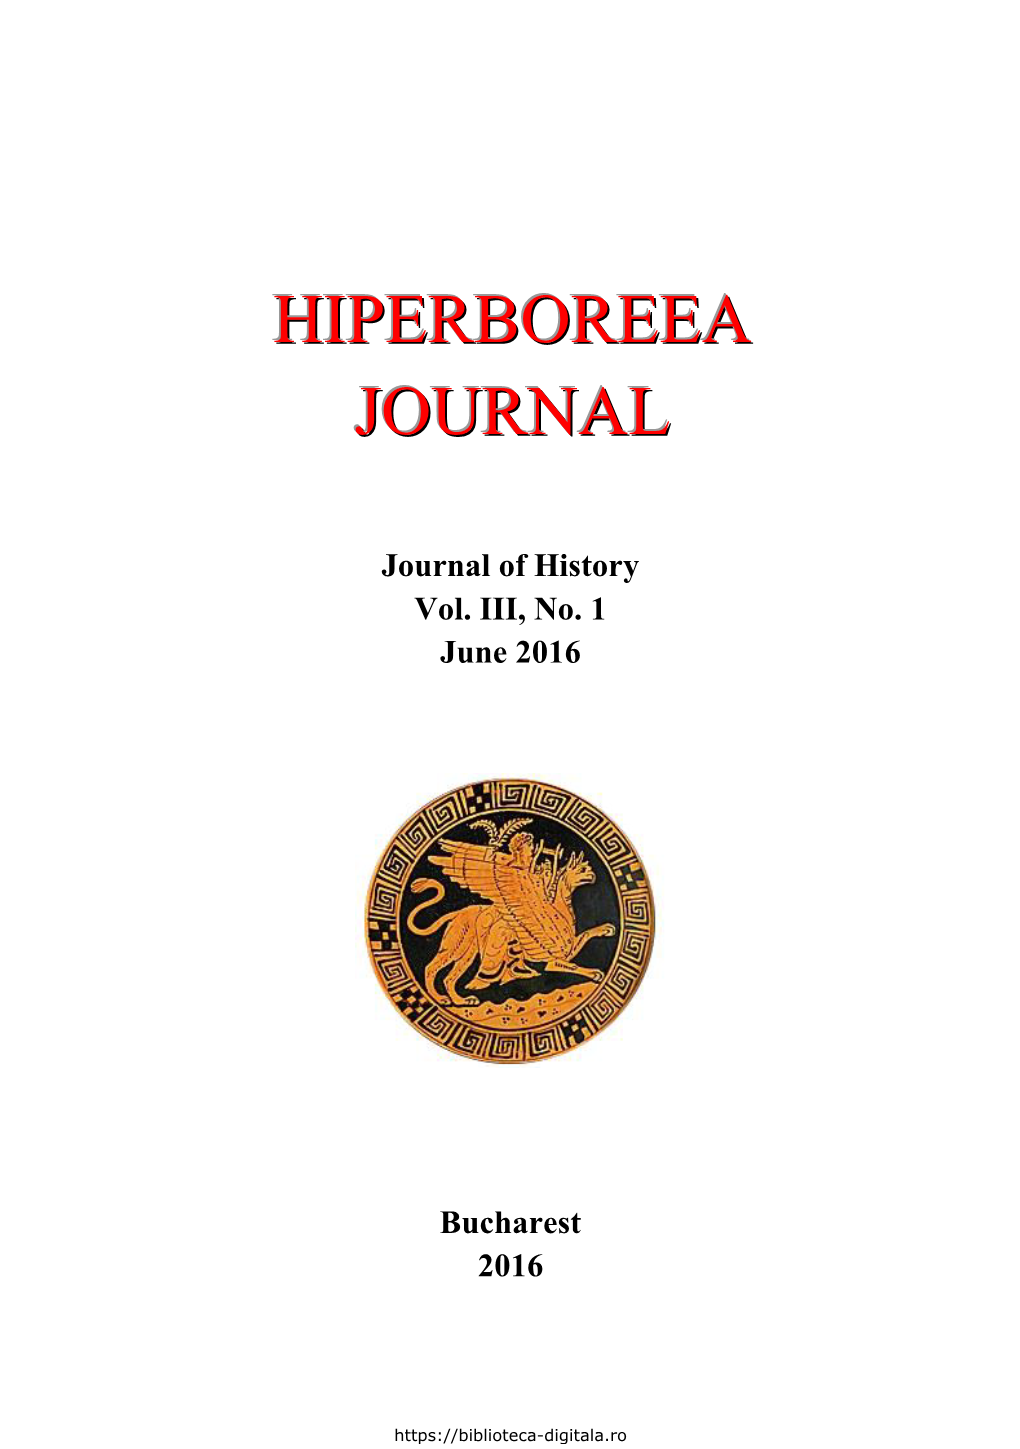 Hiperboreea Journal